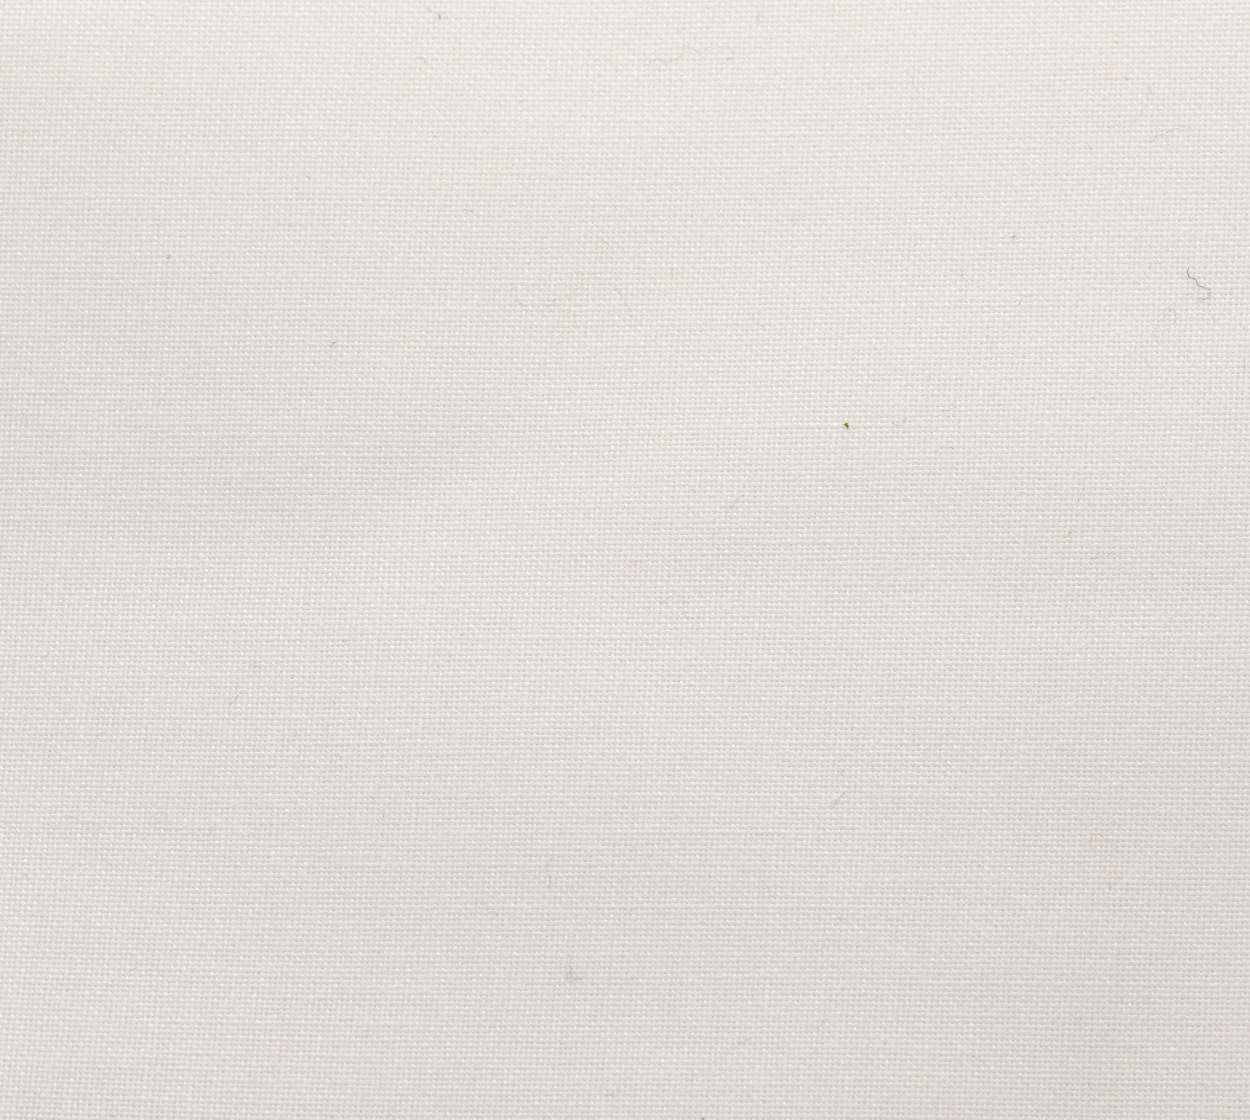 Nessel CS, weiß 303, 5,10 m breit, 6T15 im Stamm online Store München